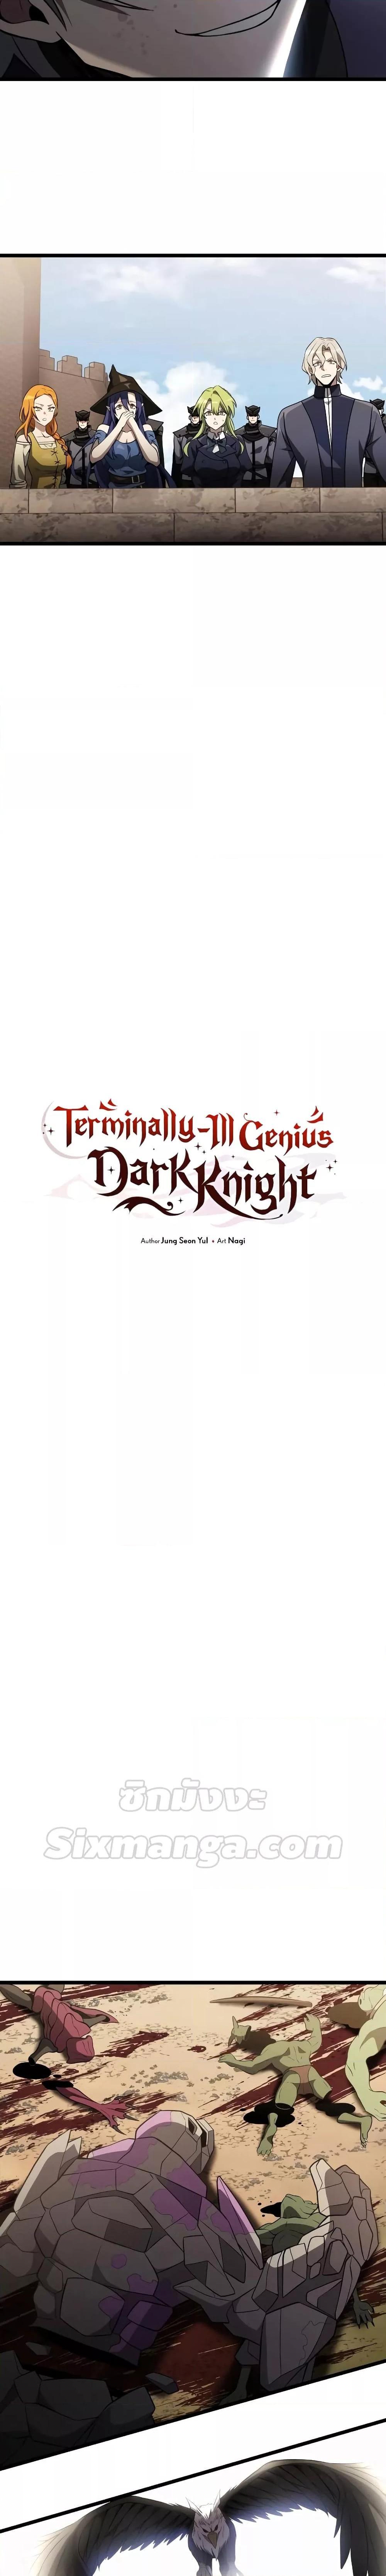 Terminally Ill Genius Dark Knight 33 02